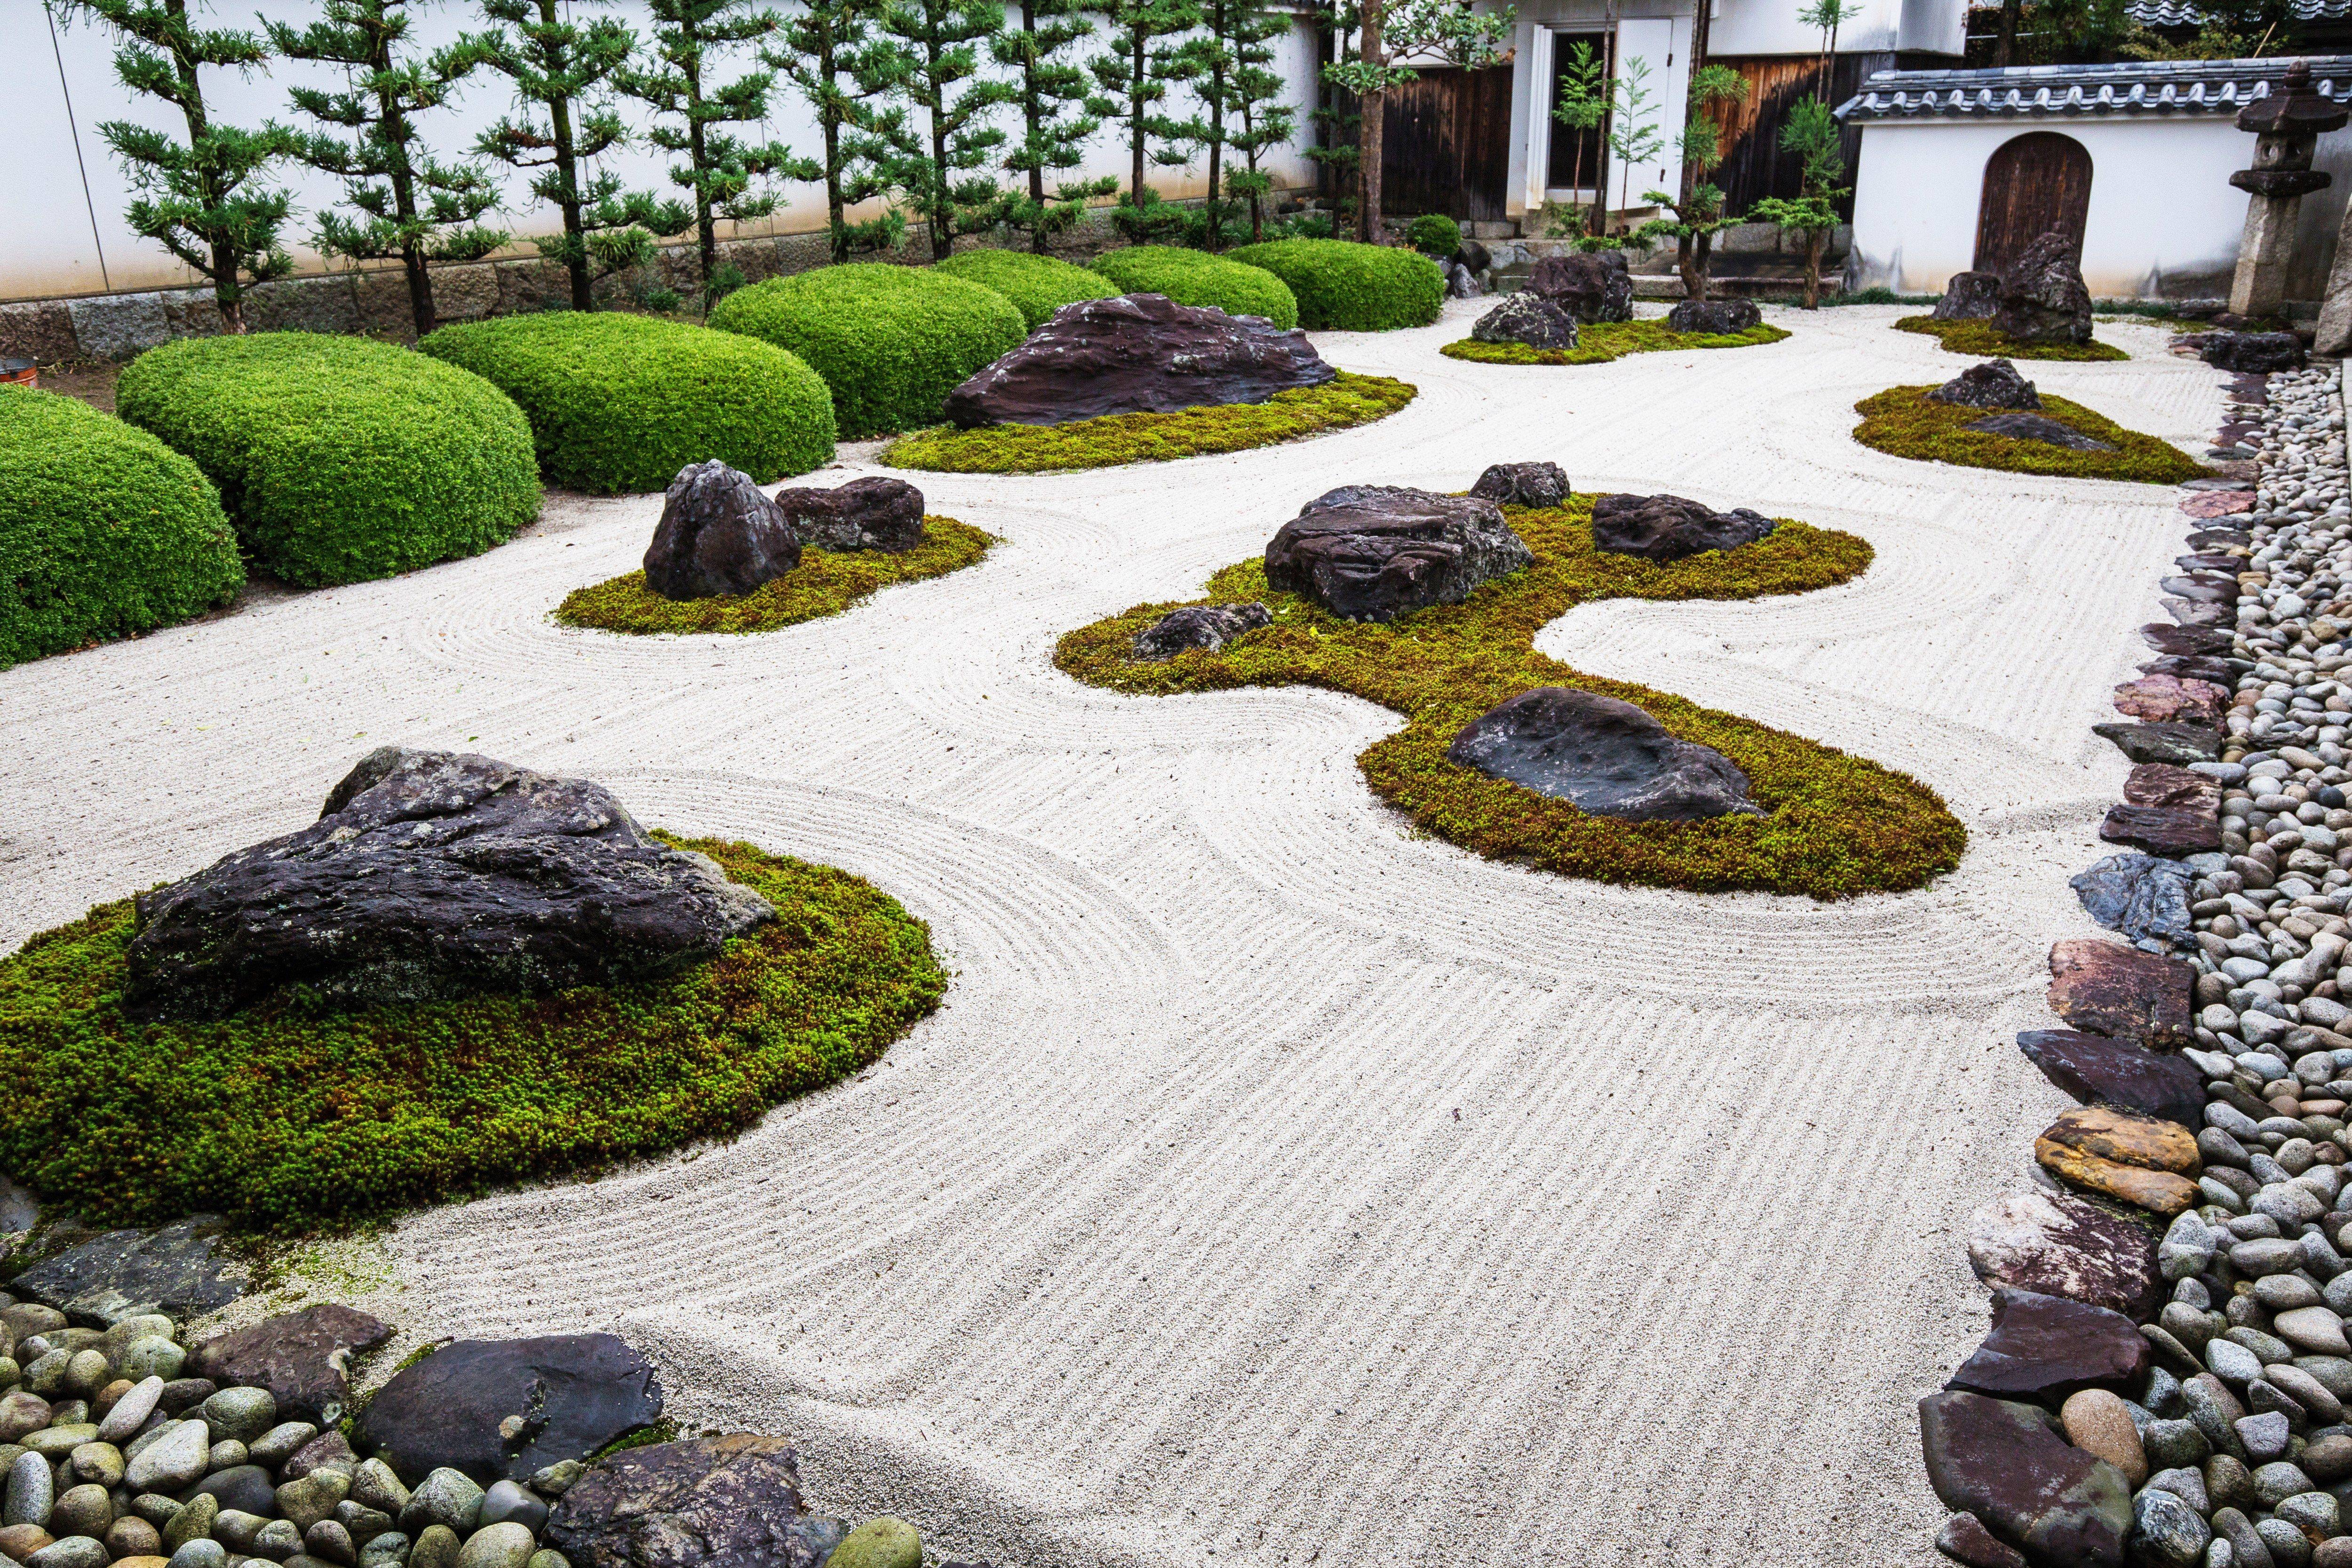 Japanesegardening Zen Rock Garden